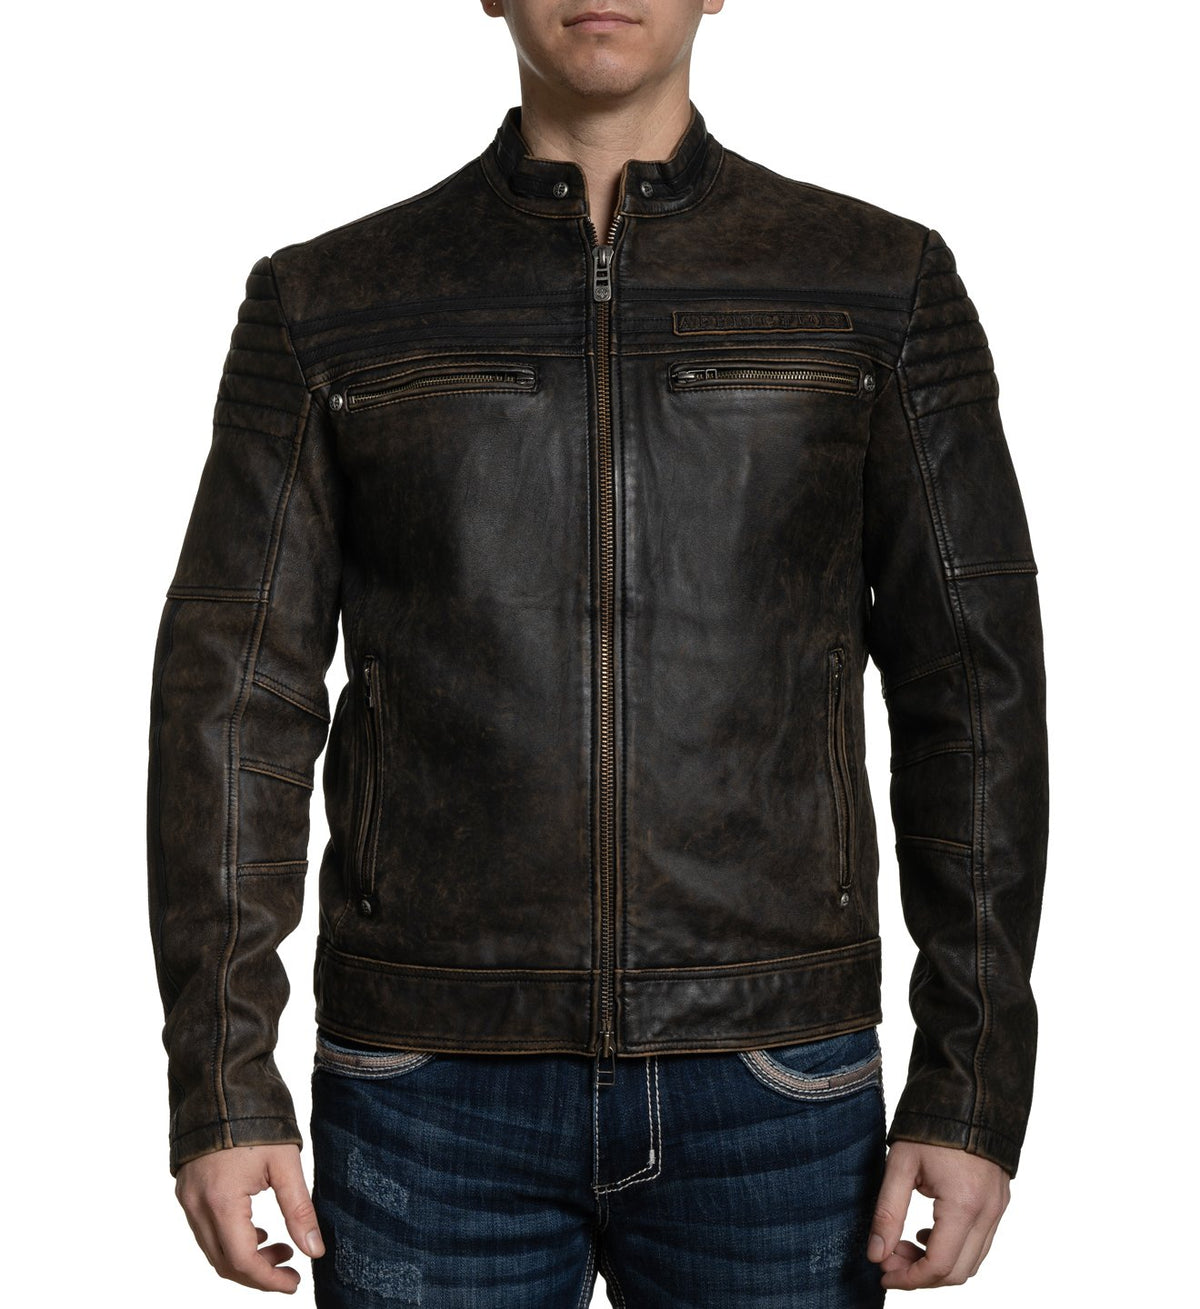 Affinity Jacket - Mens Jackets - Affliction Clothing